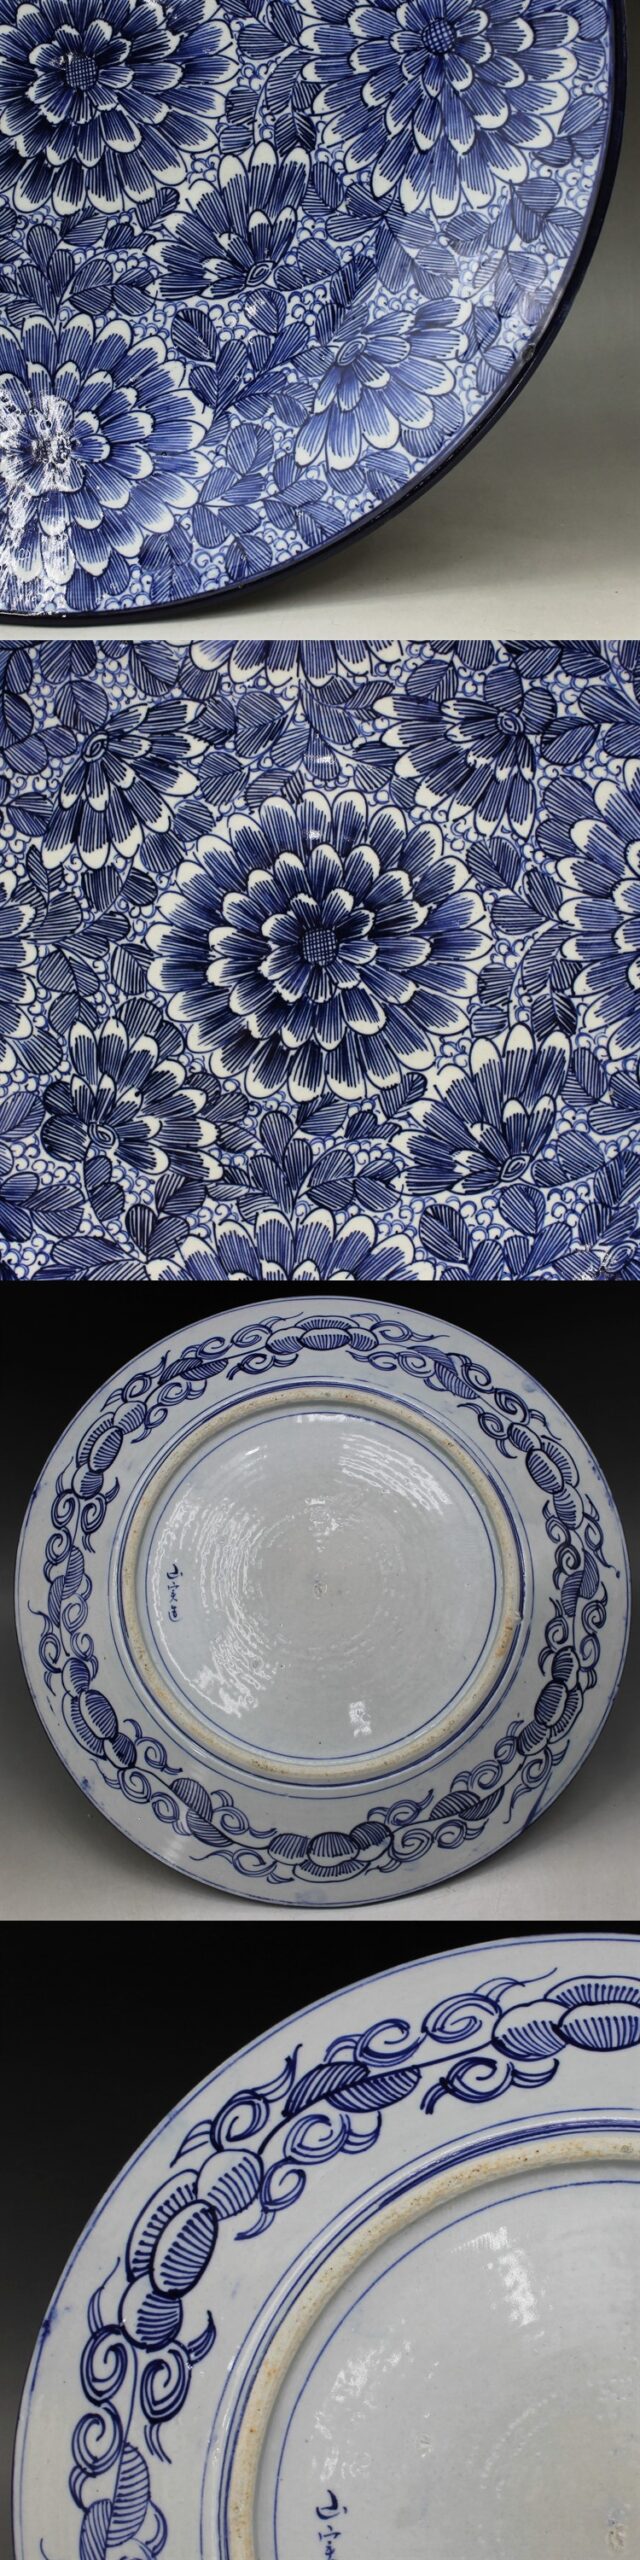 F156 大皿 染付 ベロ藍 花紋 径41㎝ 一尺3寸 皿 明治 大正 昭和 有田 伊万里 蔵出 古玩 珍宝 古董